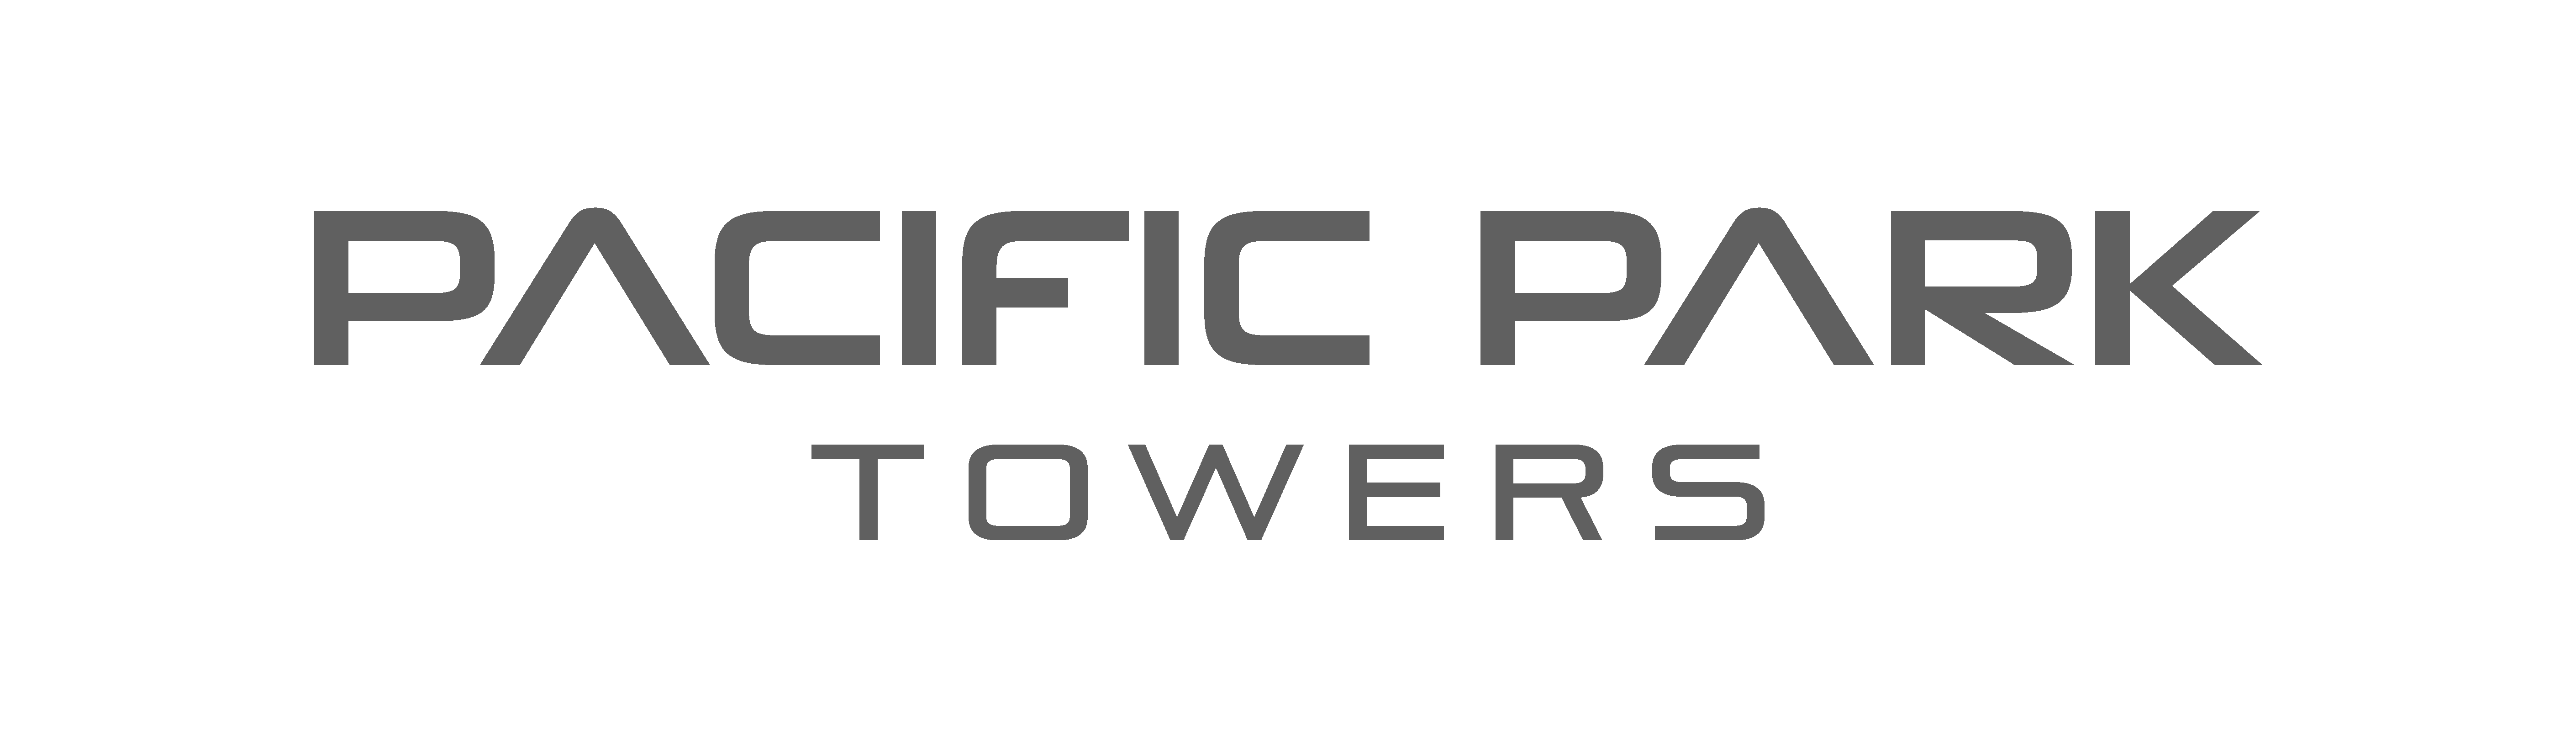 pacific-park-logo